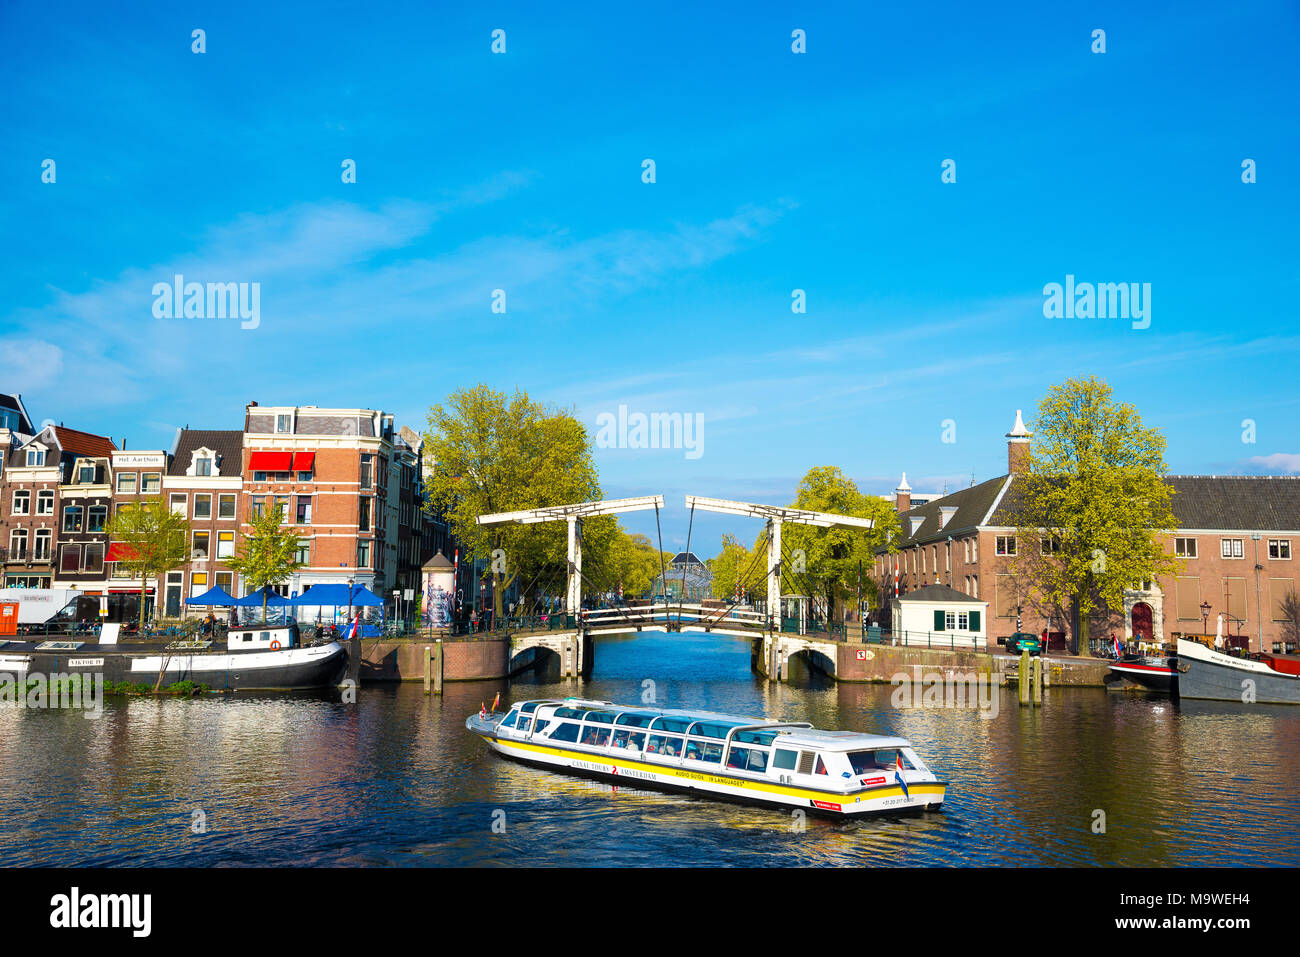 Amsterdam, Pays-Bas - 19 Avril 2017 : Le Suskindbrug 237 Walter - Brug est un pont-levis typique d'Amsterdam, Pays-Bas Banque D'Images